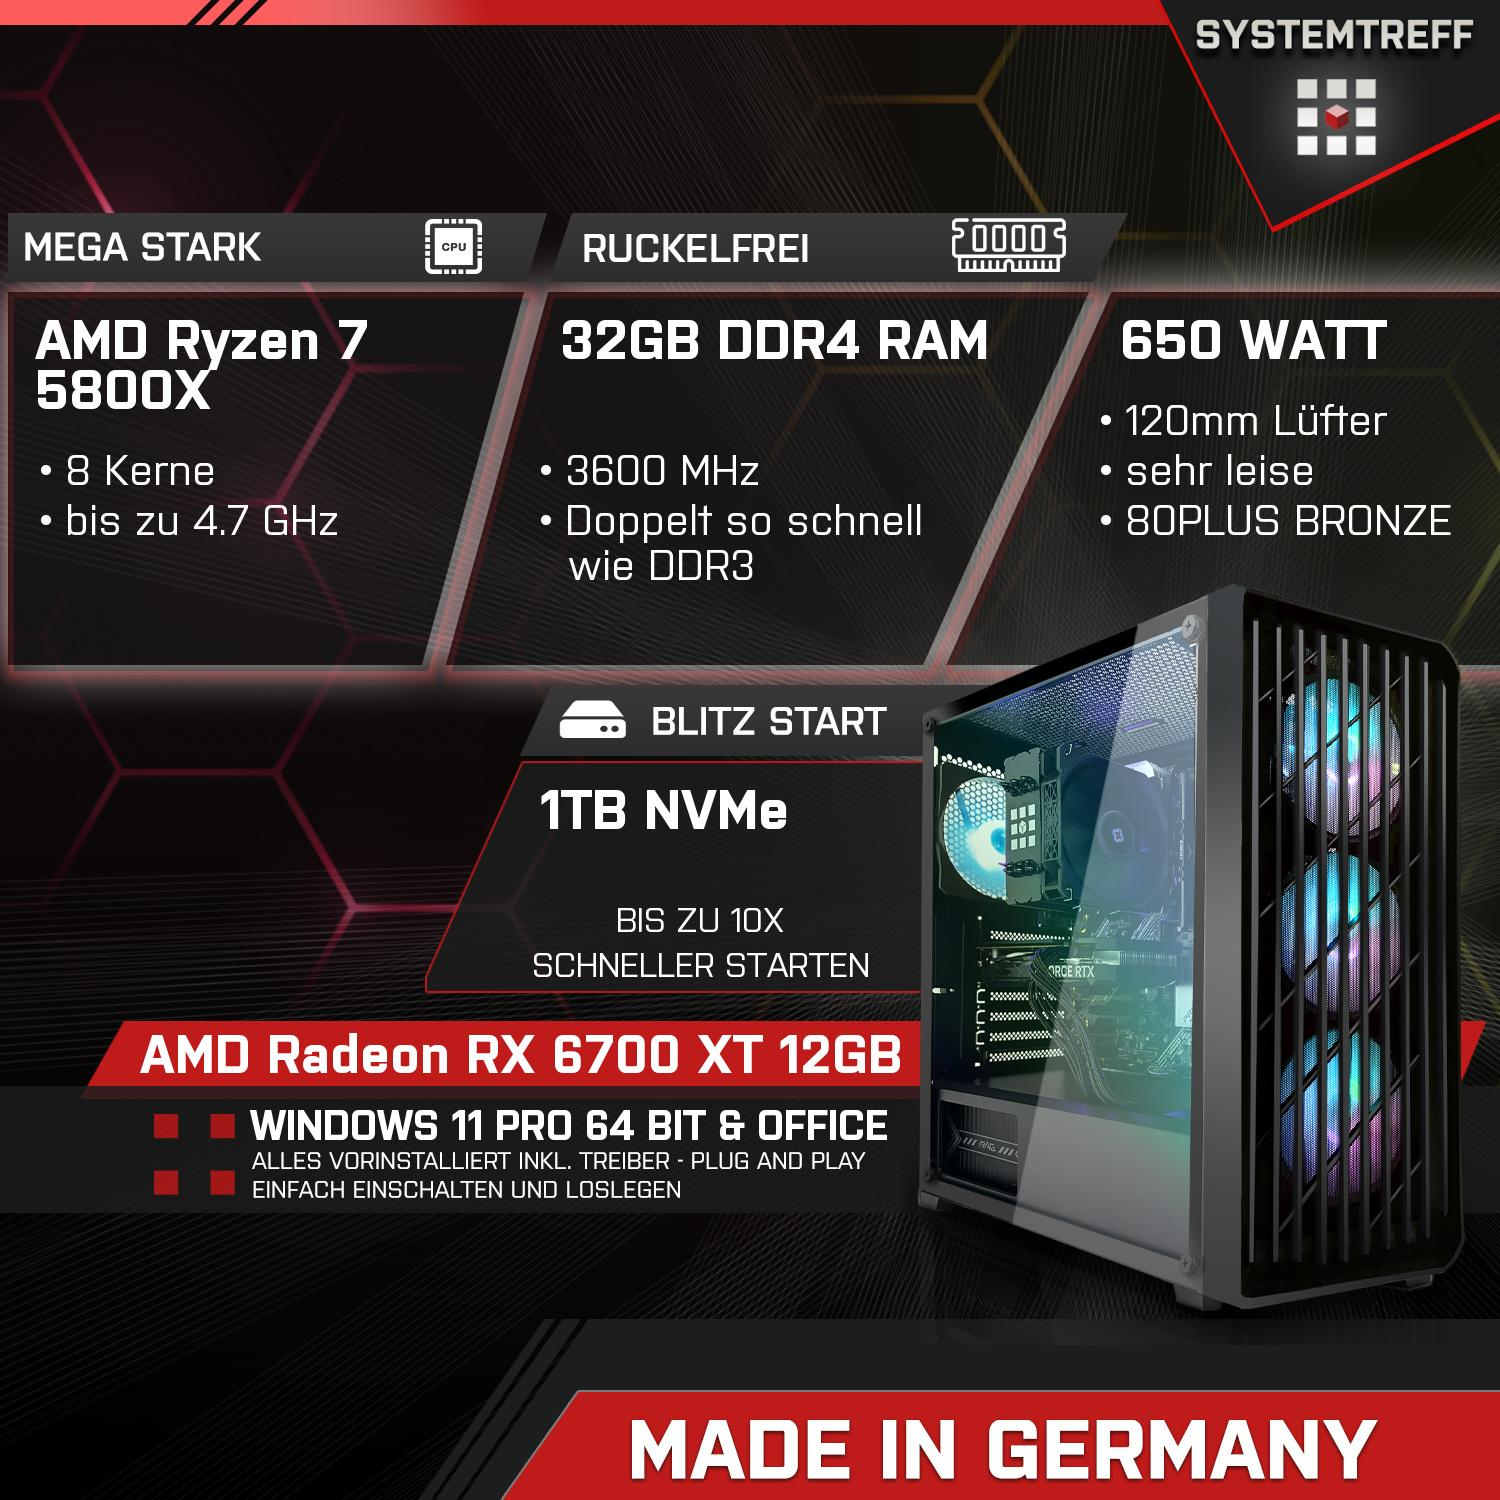 SYSTEMTREFF Gaming Komplett GB 1000 AMD 6700 Komplett 12GB 12 5800X, RAM, GDDR6, XT mit 32 GB PC 5800X AMD 7 Prozessor, RX GB Ryzen mSSD, Radeon